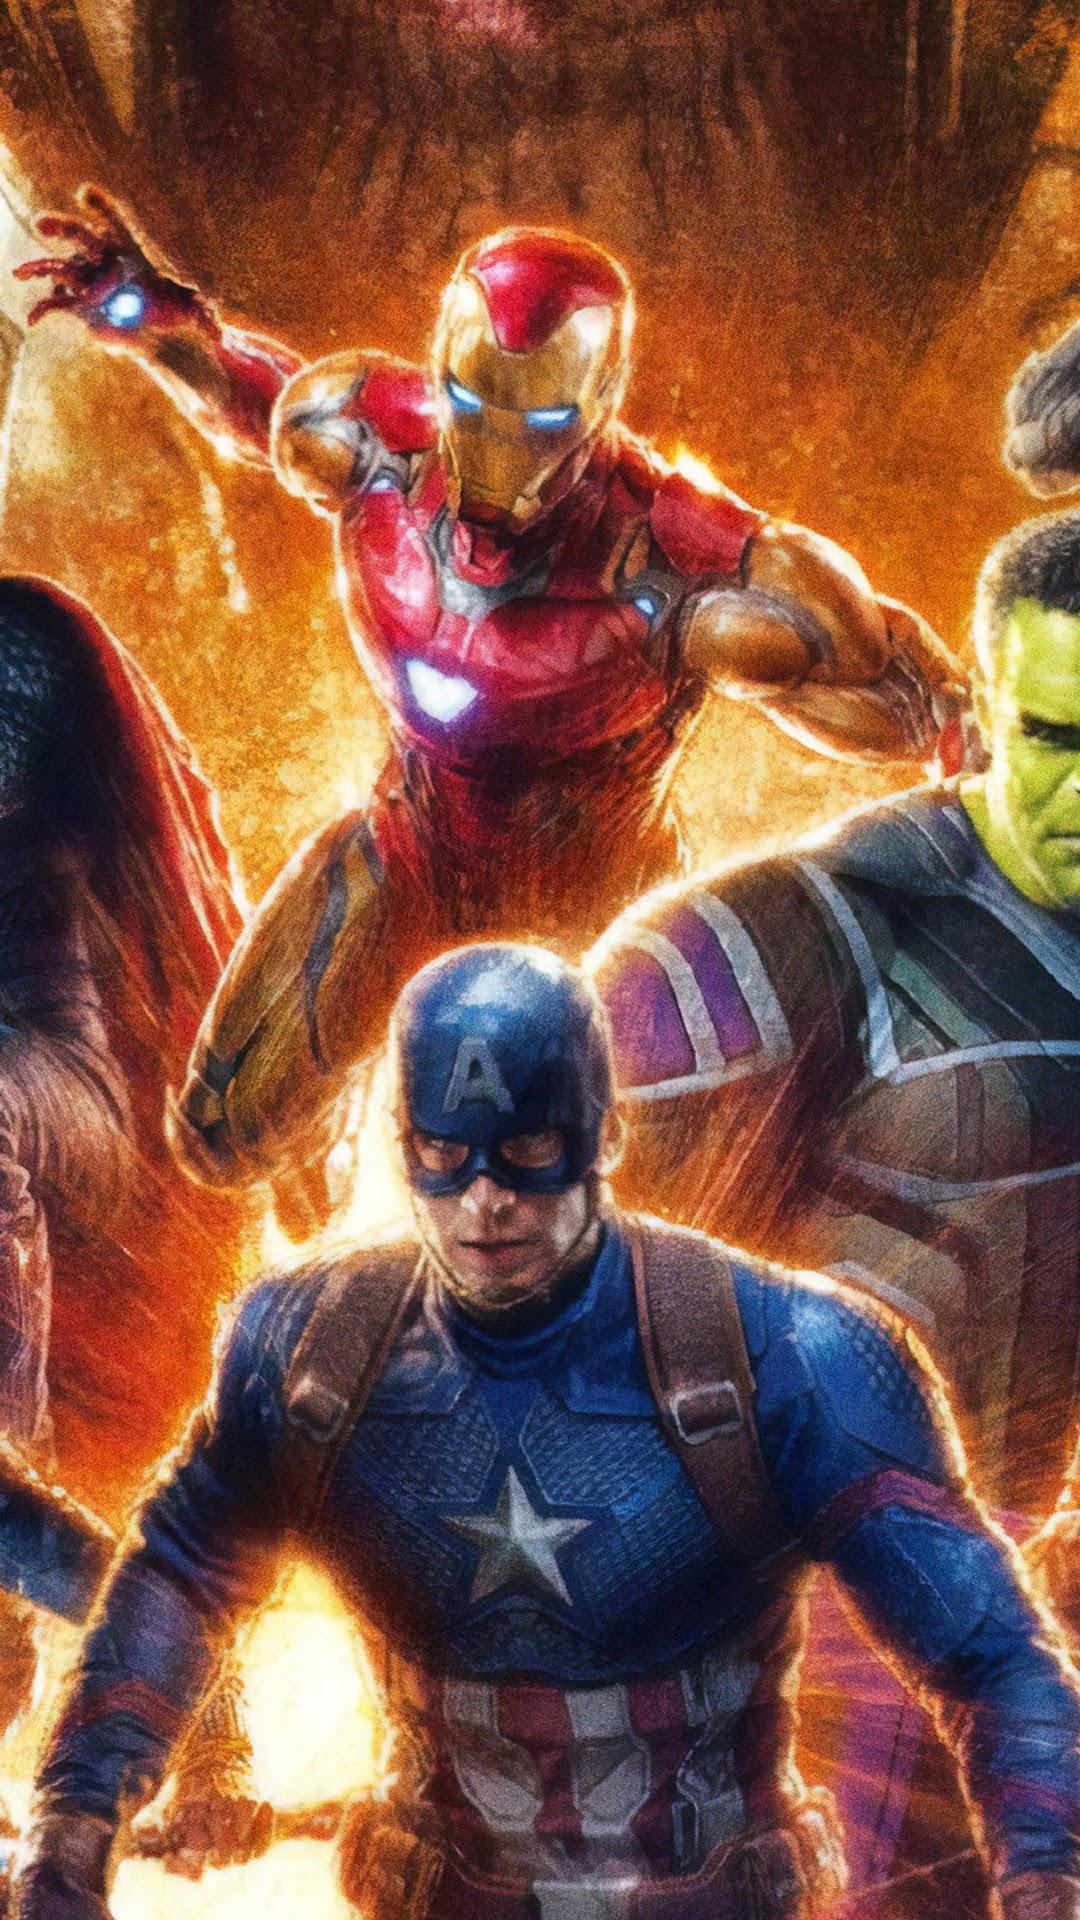 Avengers: Endgame Iron Man Captain America 4K Wallpaper